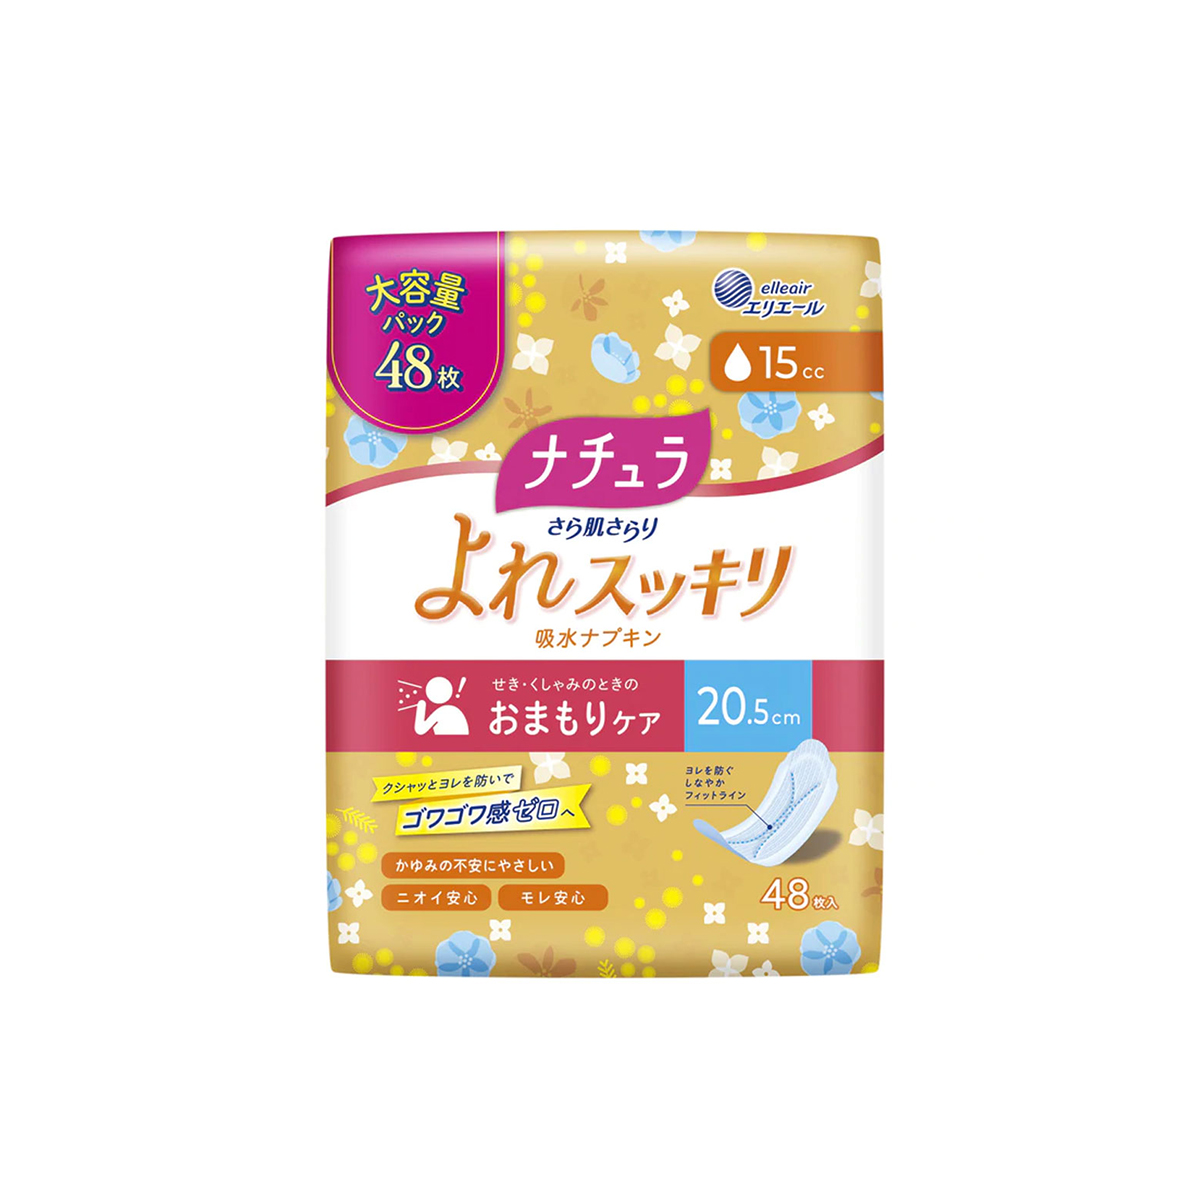 大王製紙 NATURA 娜舒雅 Daio Paper Natura慢性皮膚清爽水吸收餐巾20.5cm 15cc大容量（48件）